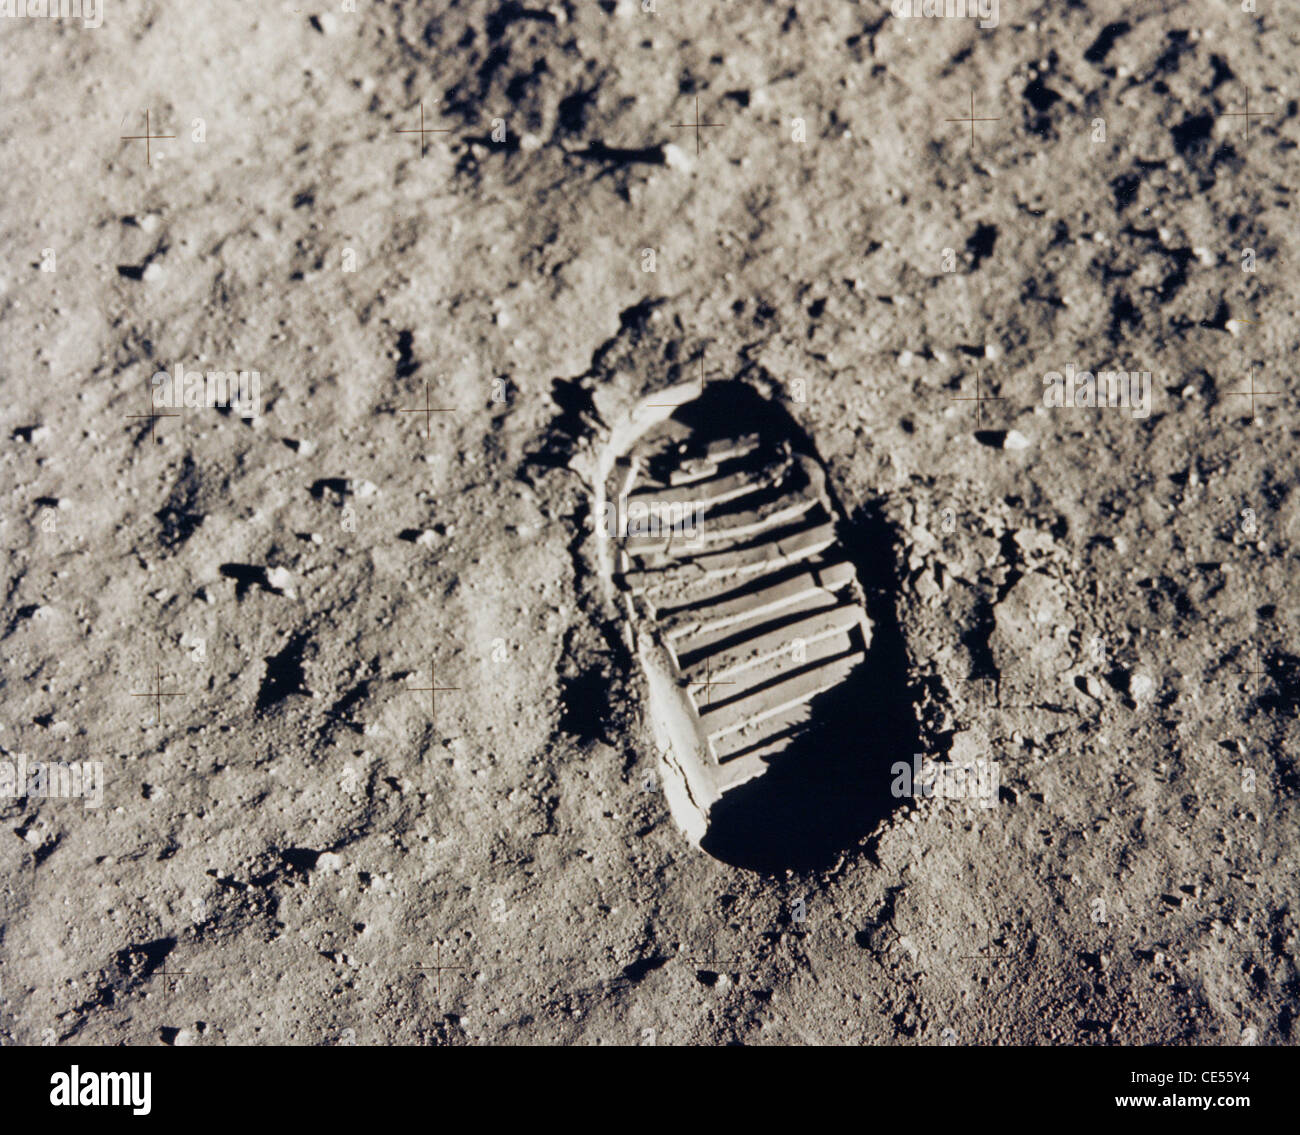 Buzz Aldrin, le pilote de la première mission d'atterrissage lunaire, quitte son lors d'un amorçage activité extravéhiculaire Apollo 11 Banque D'Images